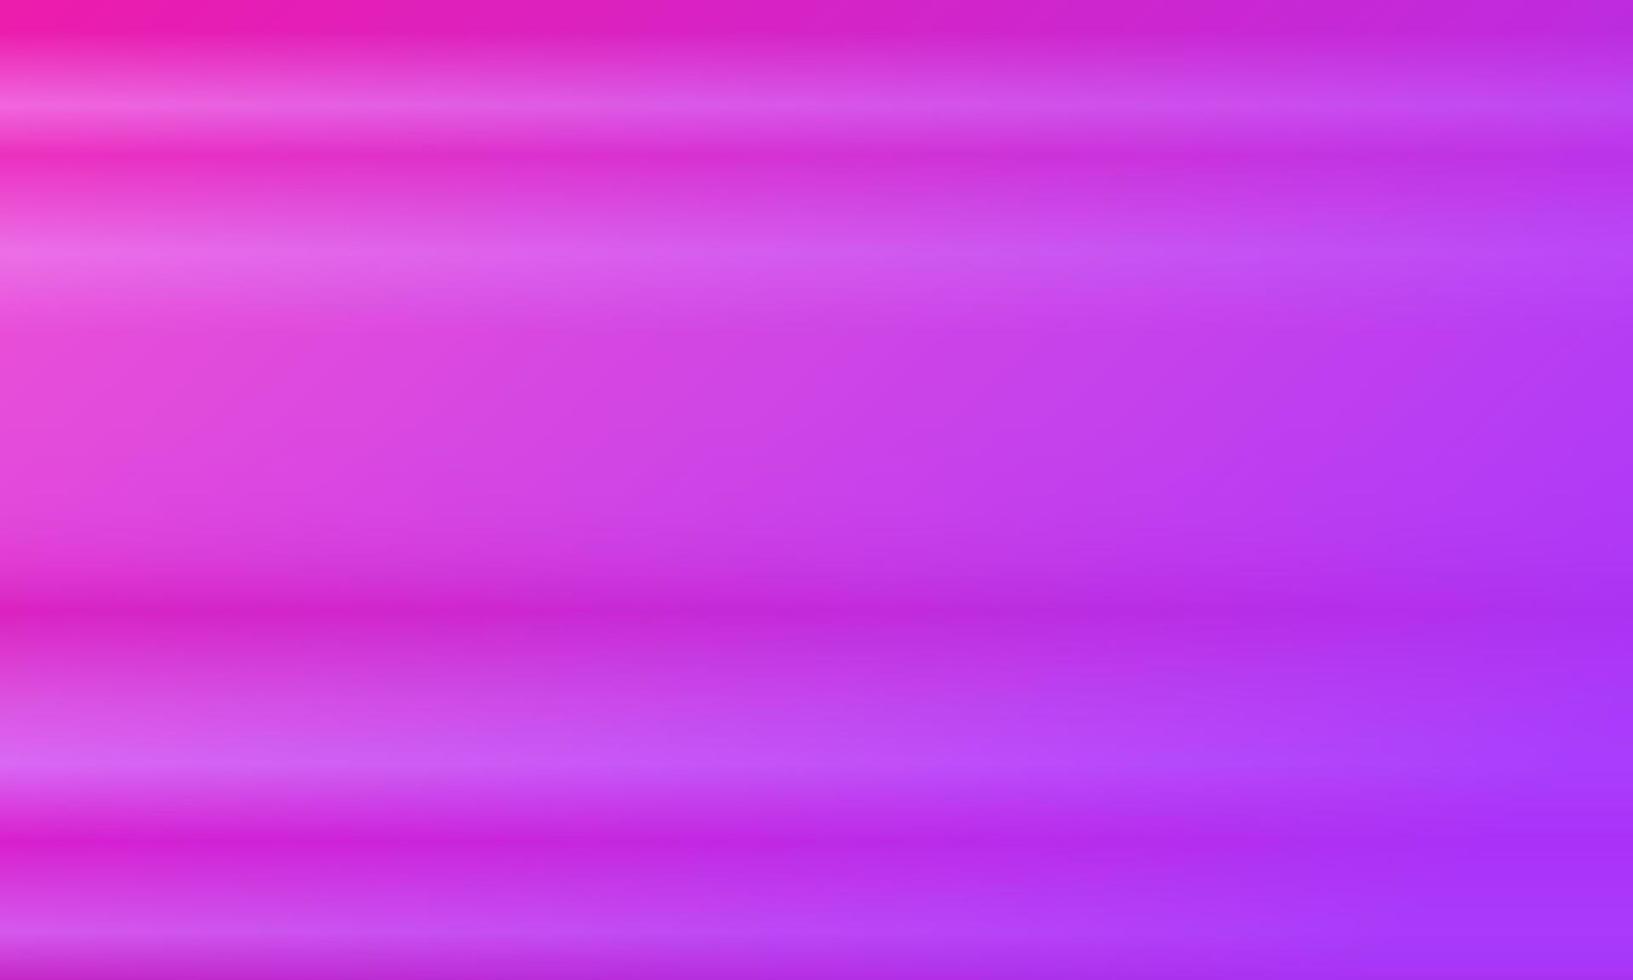 fond abstrait dégradé horizontal rose et violet. style brillant, flou, simple, moderne et coloré. idéal pour la toile de fond, la page d'accueil, le papier peint, la carte, la couverture, l'affiche, la bannière ou le dépliant vecteur